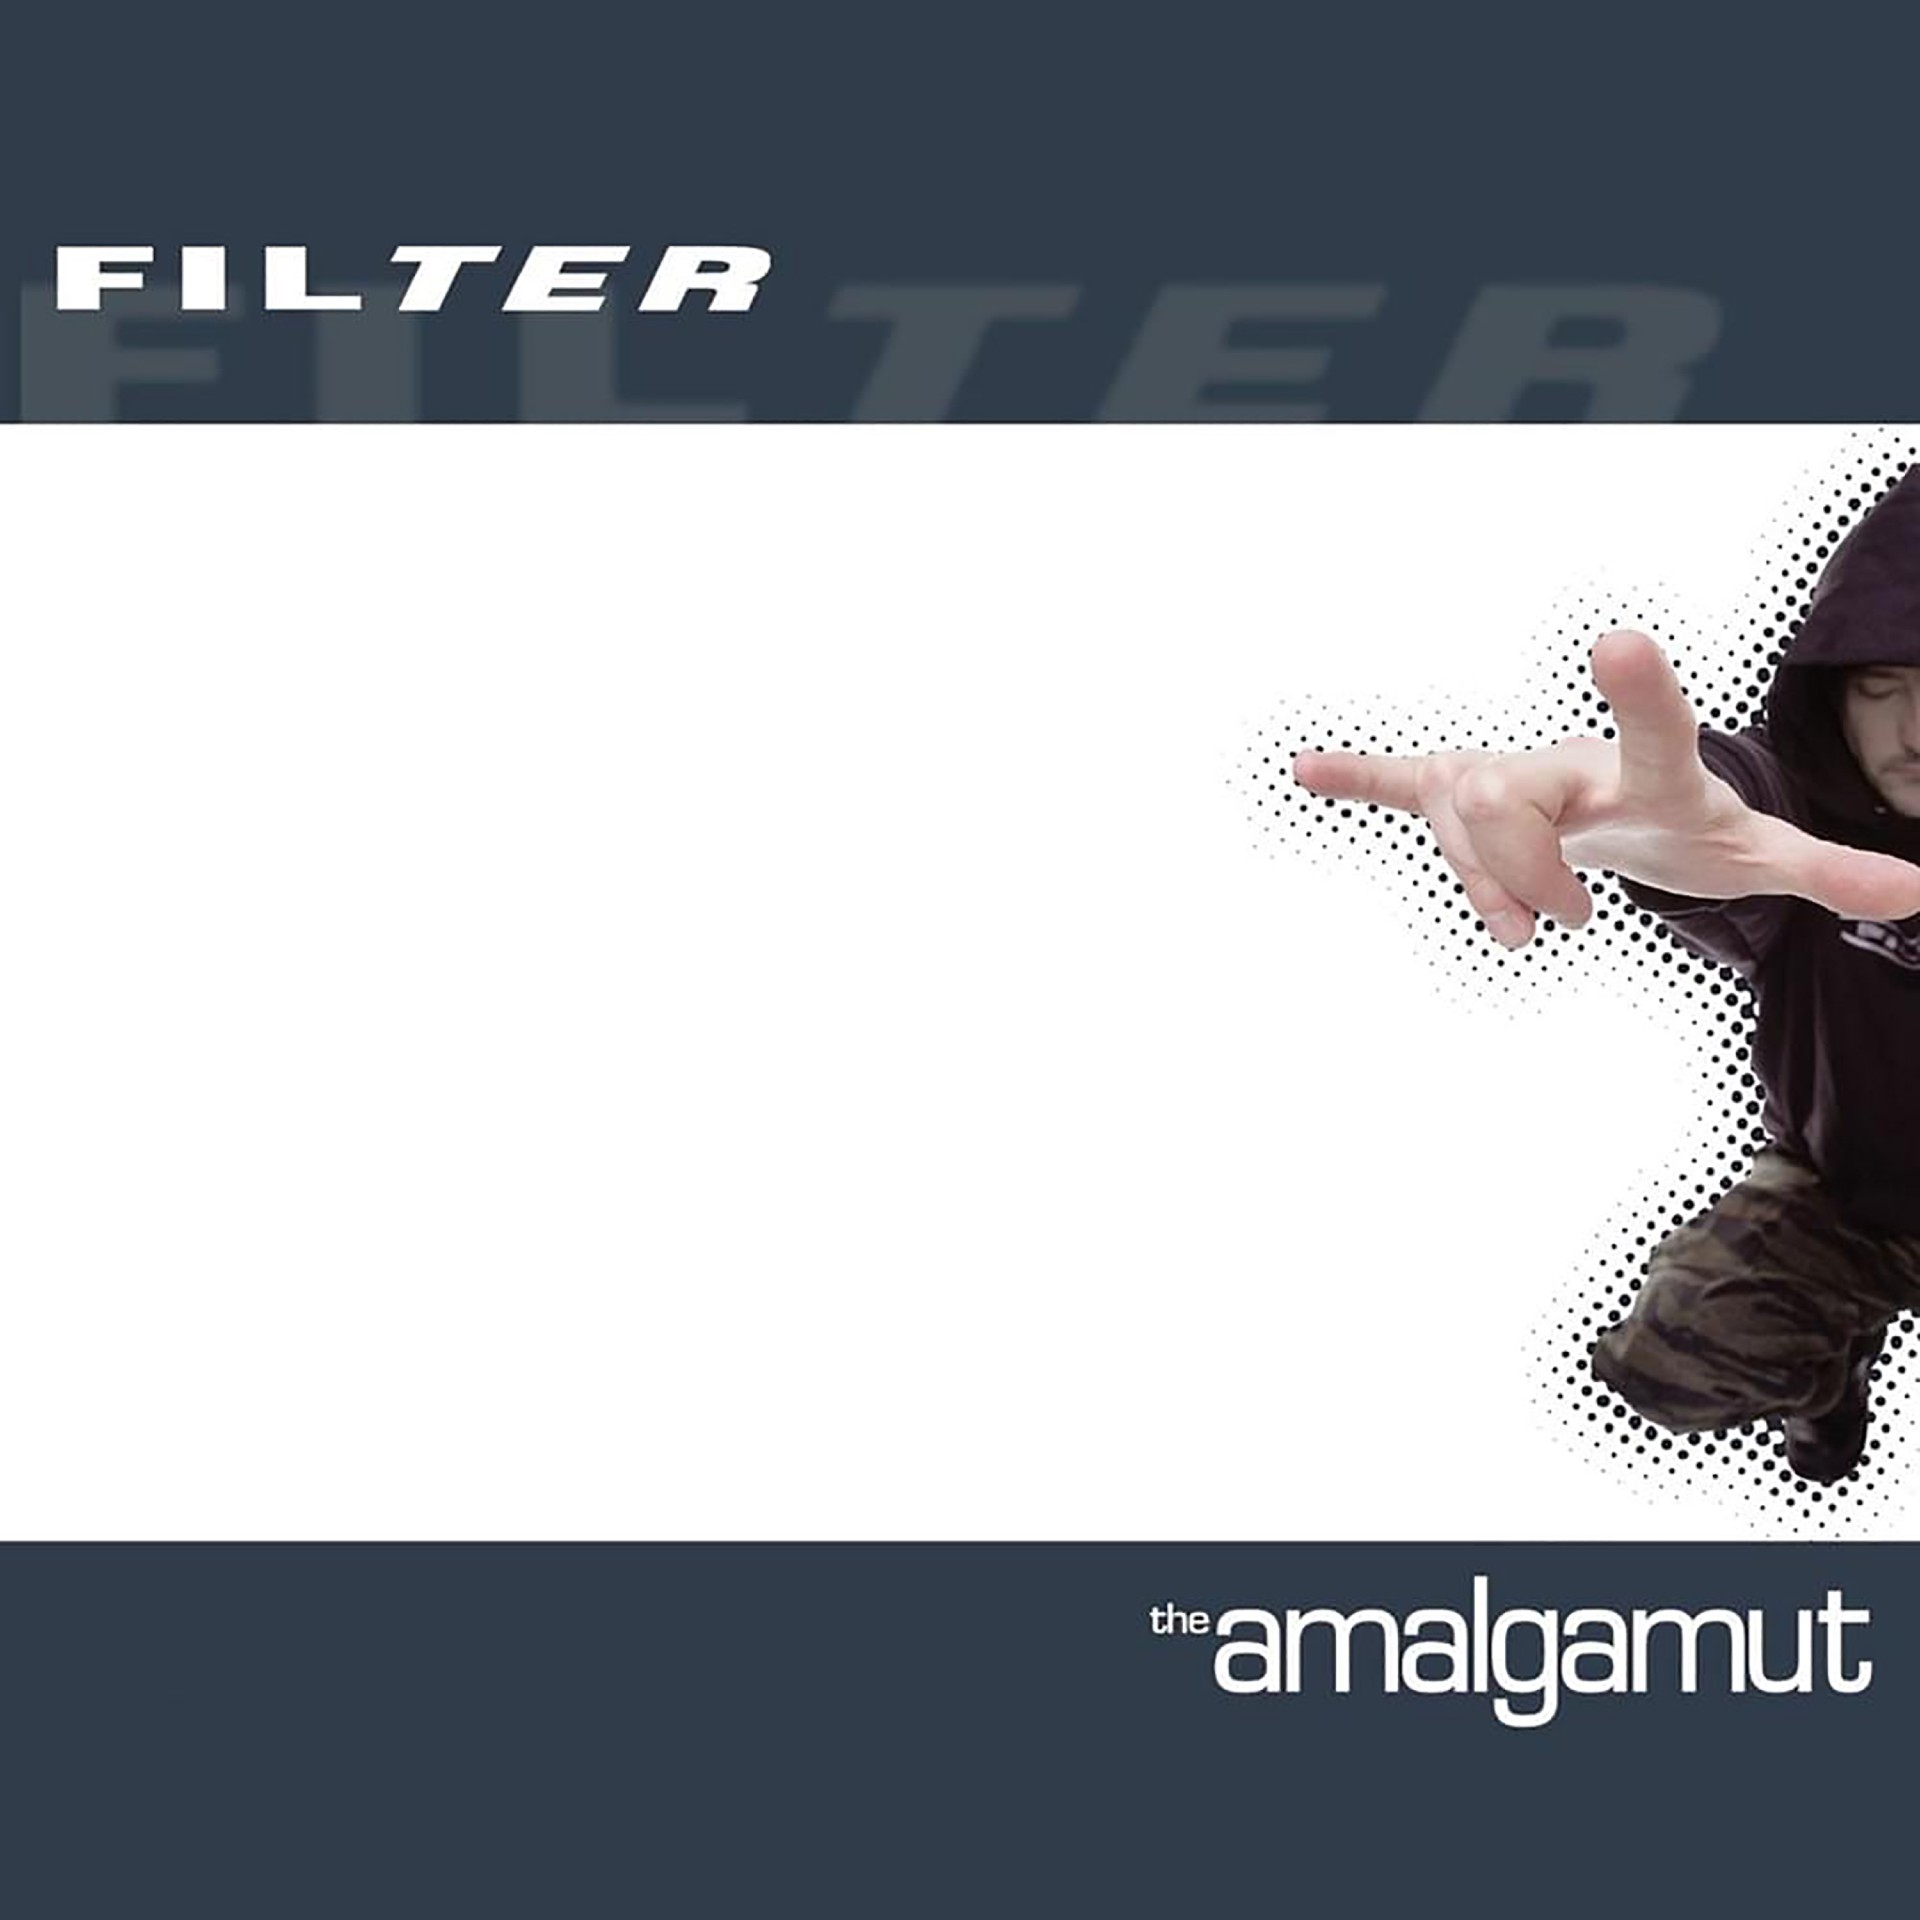 Filter ‘The Amalgamut’ album cover artwork